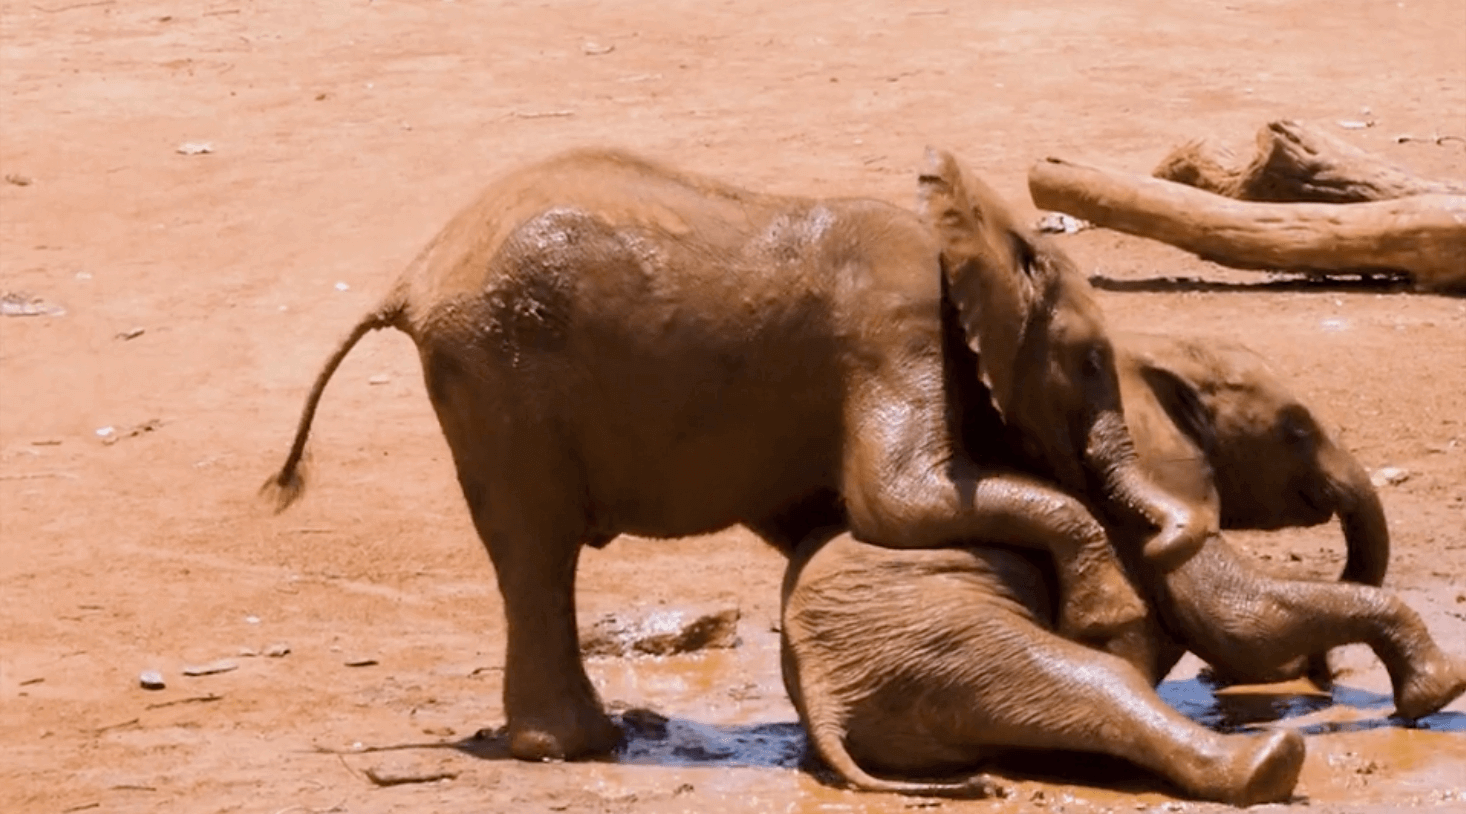 Baby elephants tussling in mud.